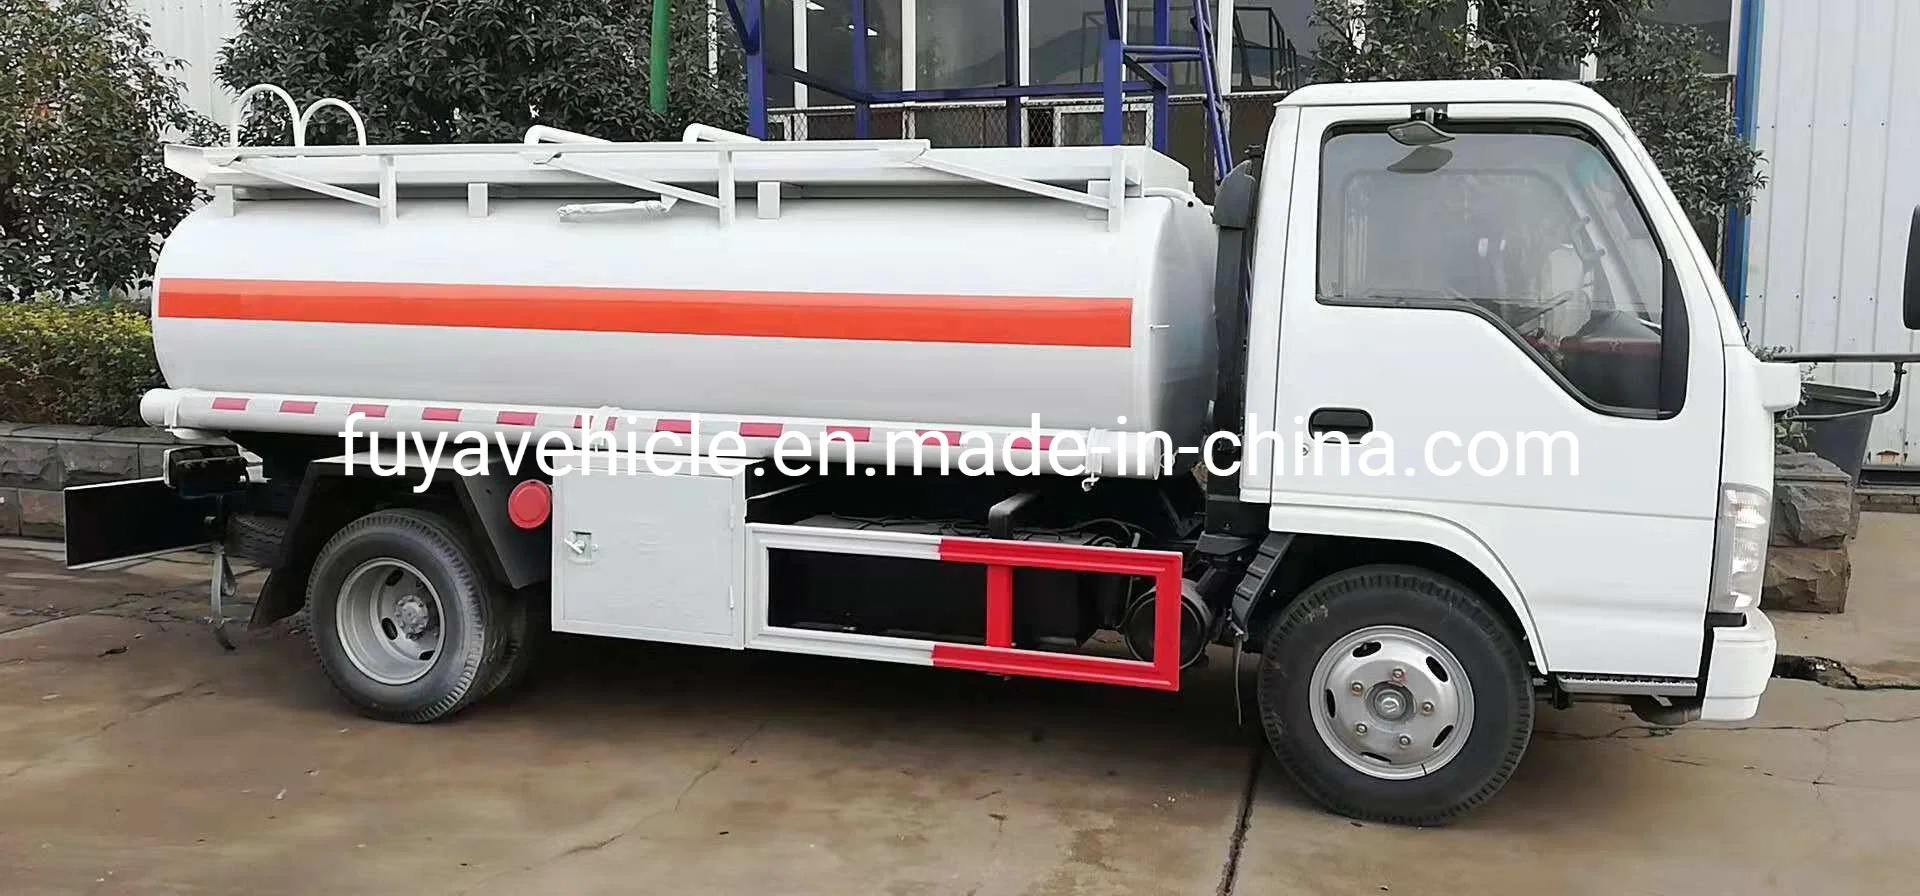 Japanische Marke Isuz 5000 Liter 5 Cbm 7000 Liter Kraftstoff Tankwagen zum Tanken